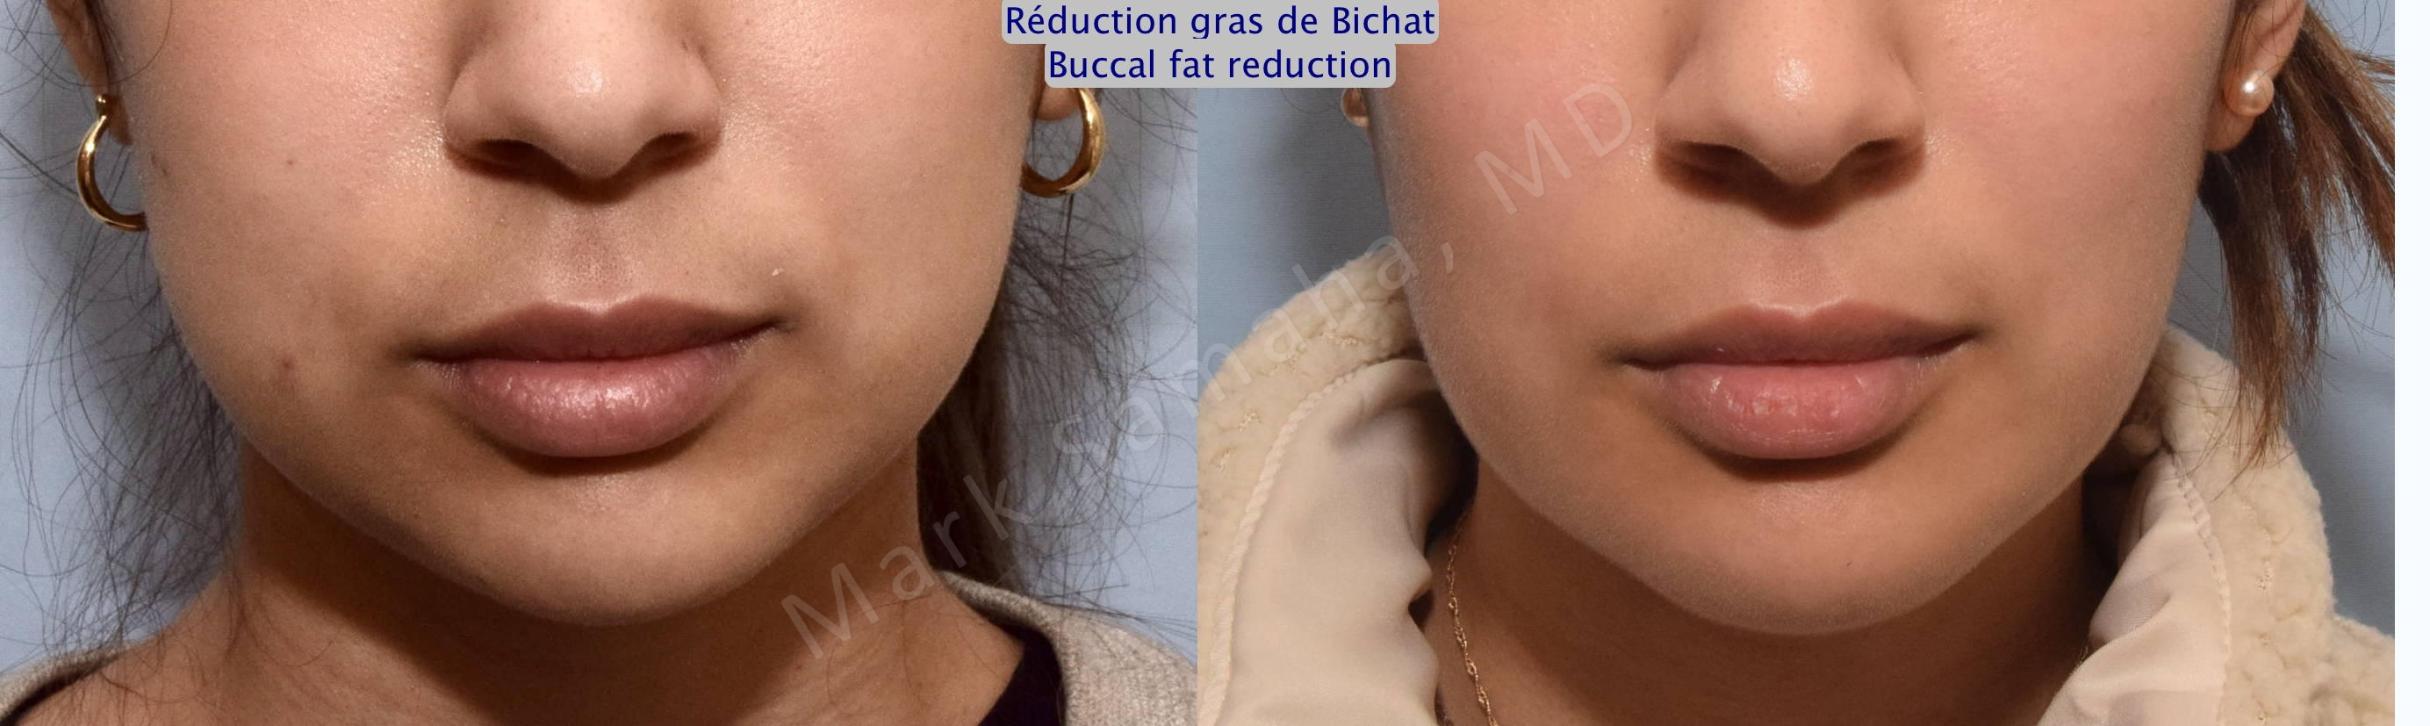 Before & After Réduction des Boules de Bichat / Buccal Fat Removal Case 157 Front View in Mount Royal, QC